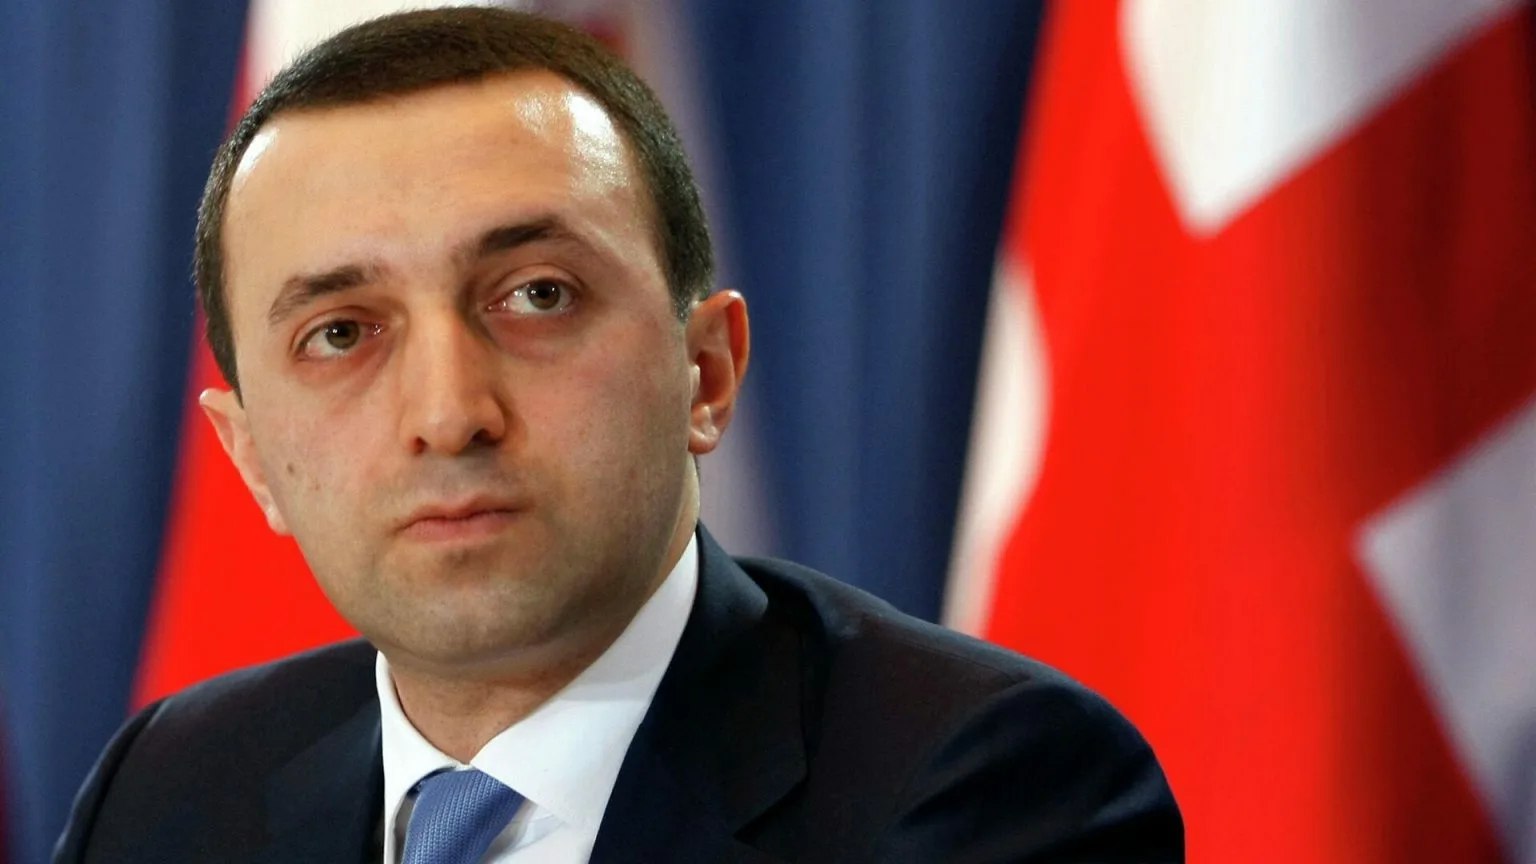 Qaribaşvili: “Azərbaycan və Ermənistan arasında sülh təşəbbüsü konkret nəticələr verib”